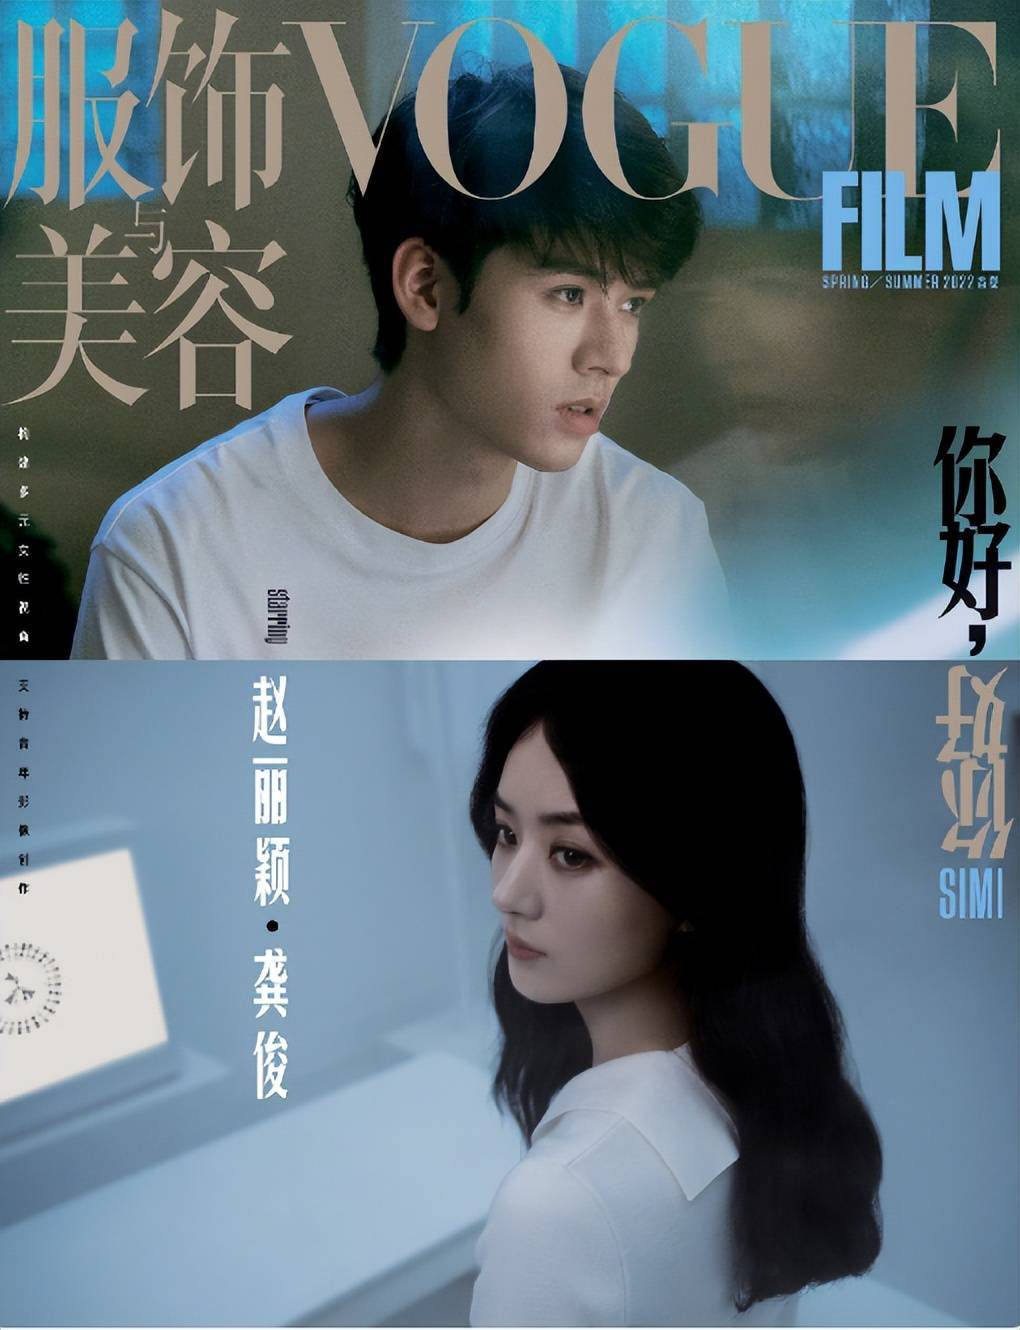 赵丽颖白色眼线脏辫造型写真，与龚俊共同登上VOGUEfilm封面